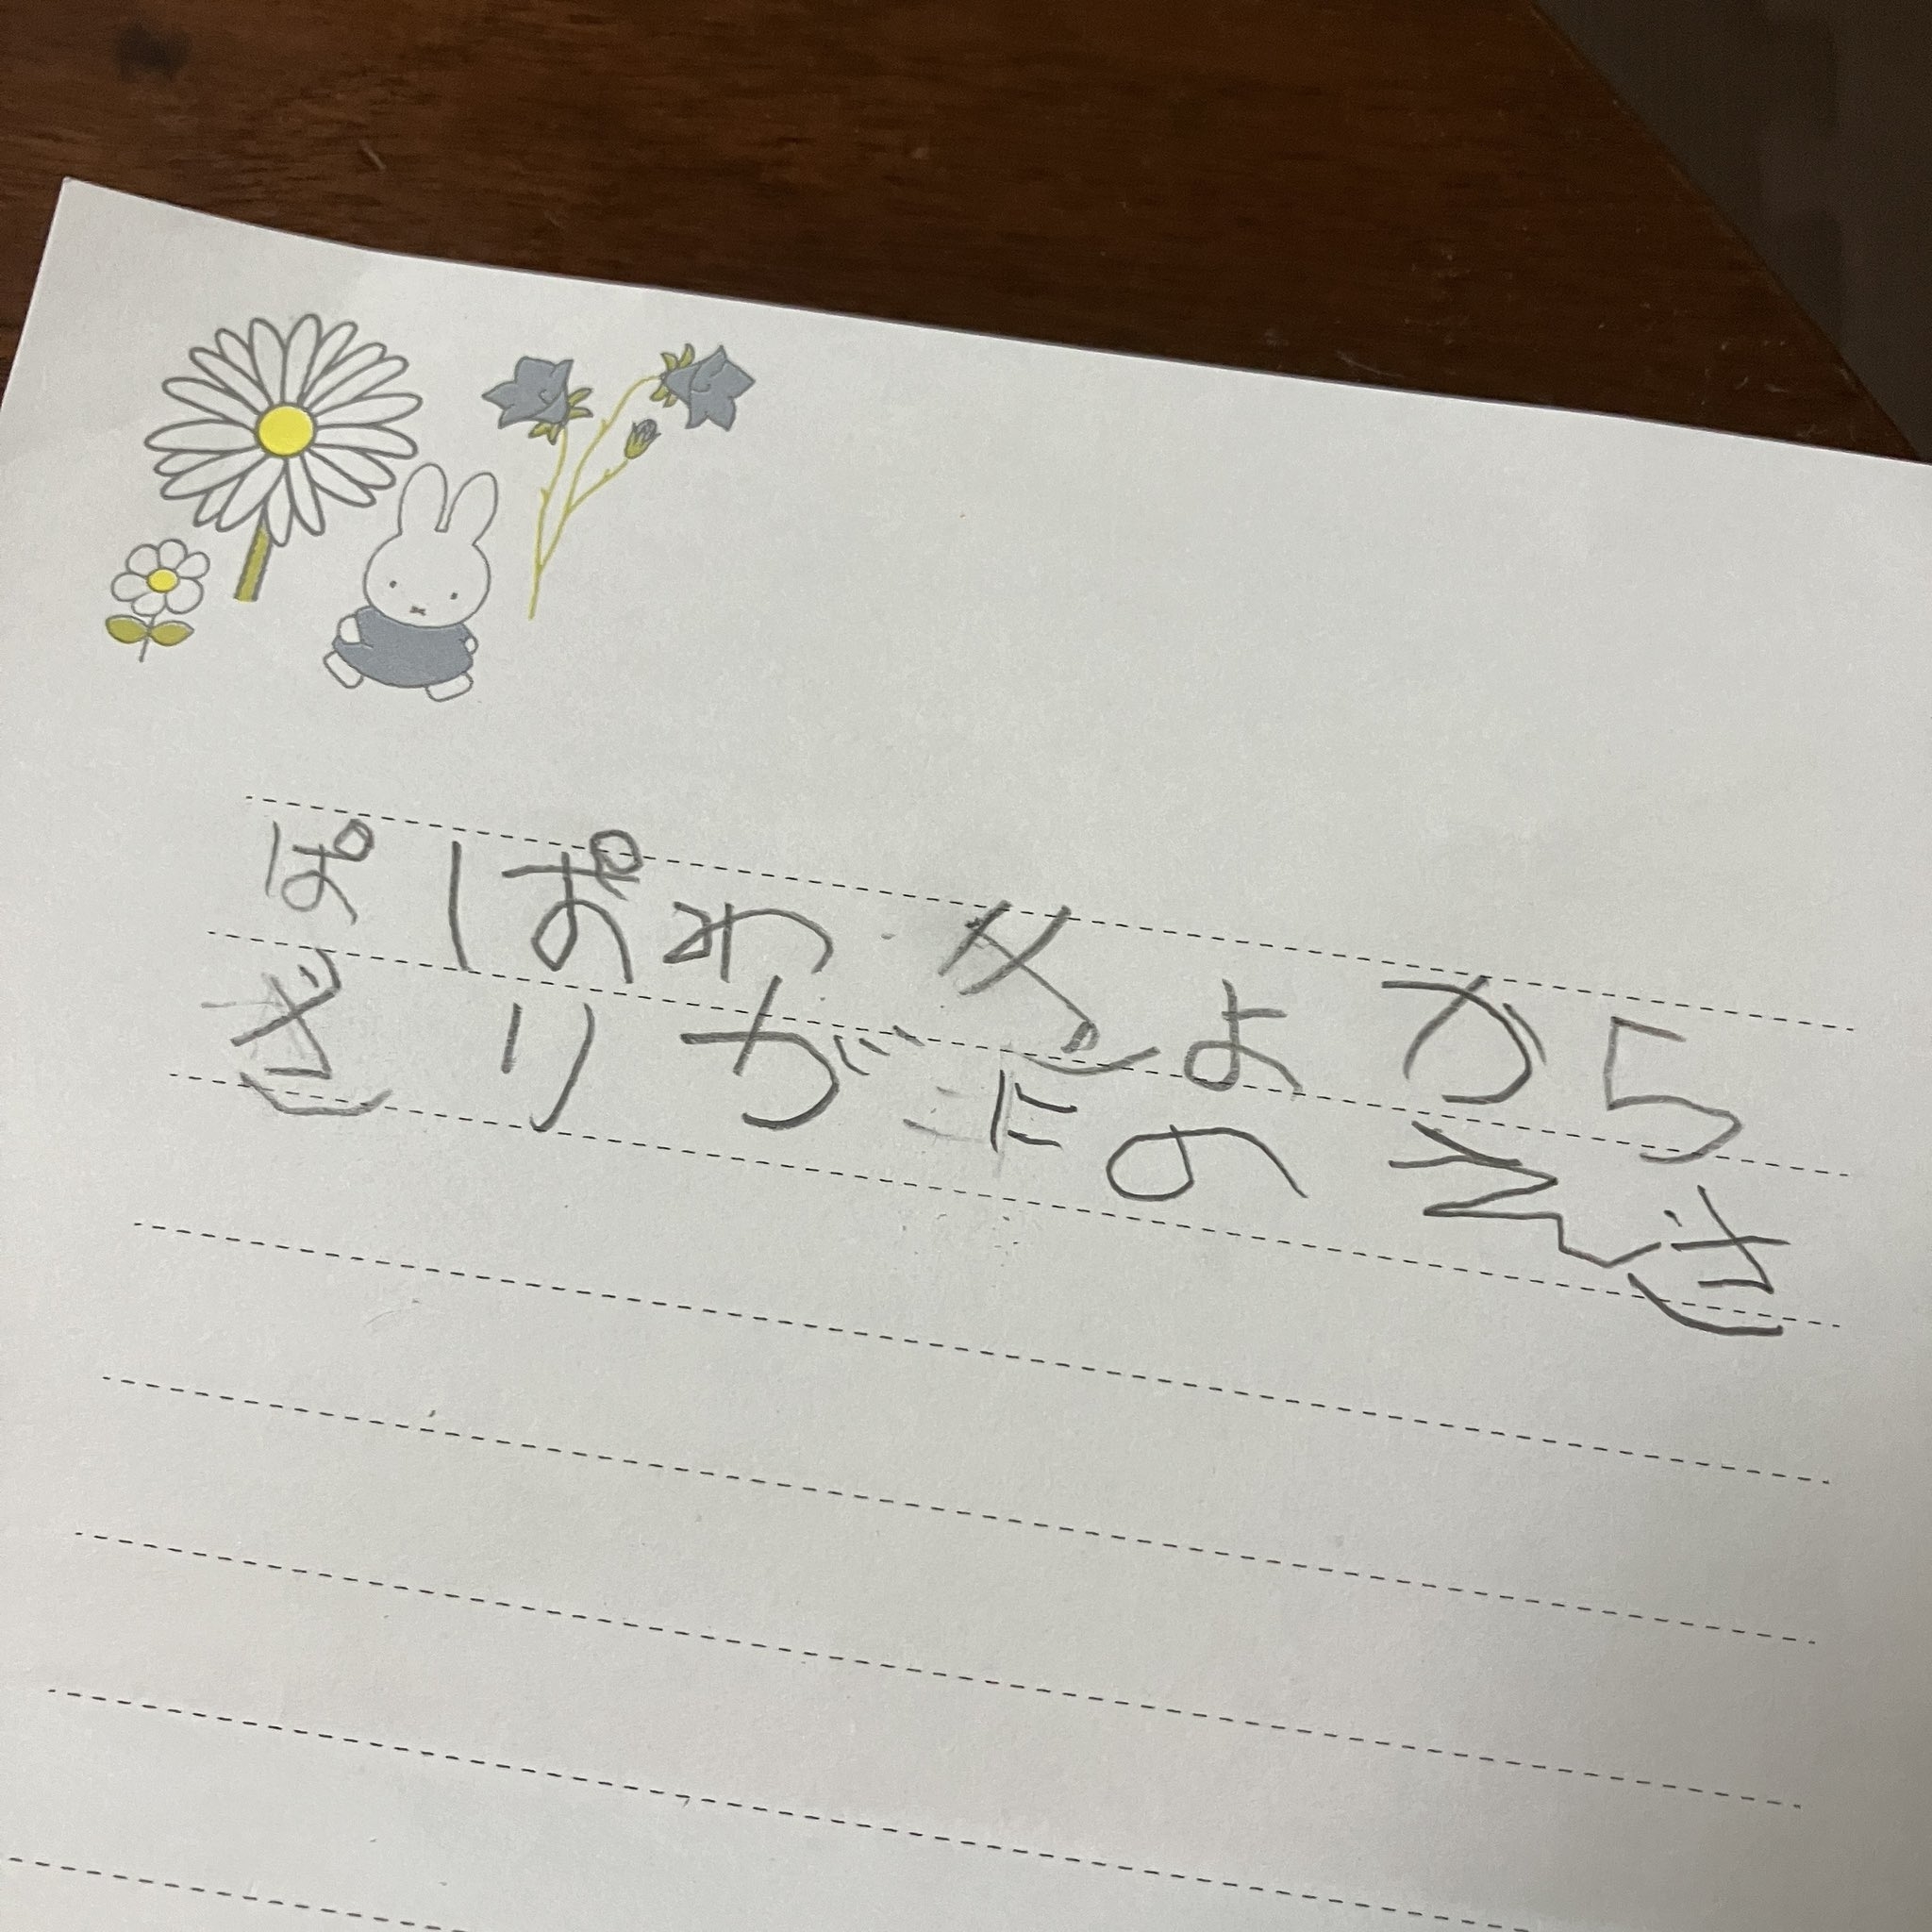 子供の手書き文字と絵が描かれた紙。&quot;Miffy&quot;キャラクターと花が描かれている。